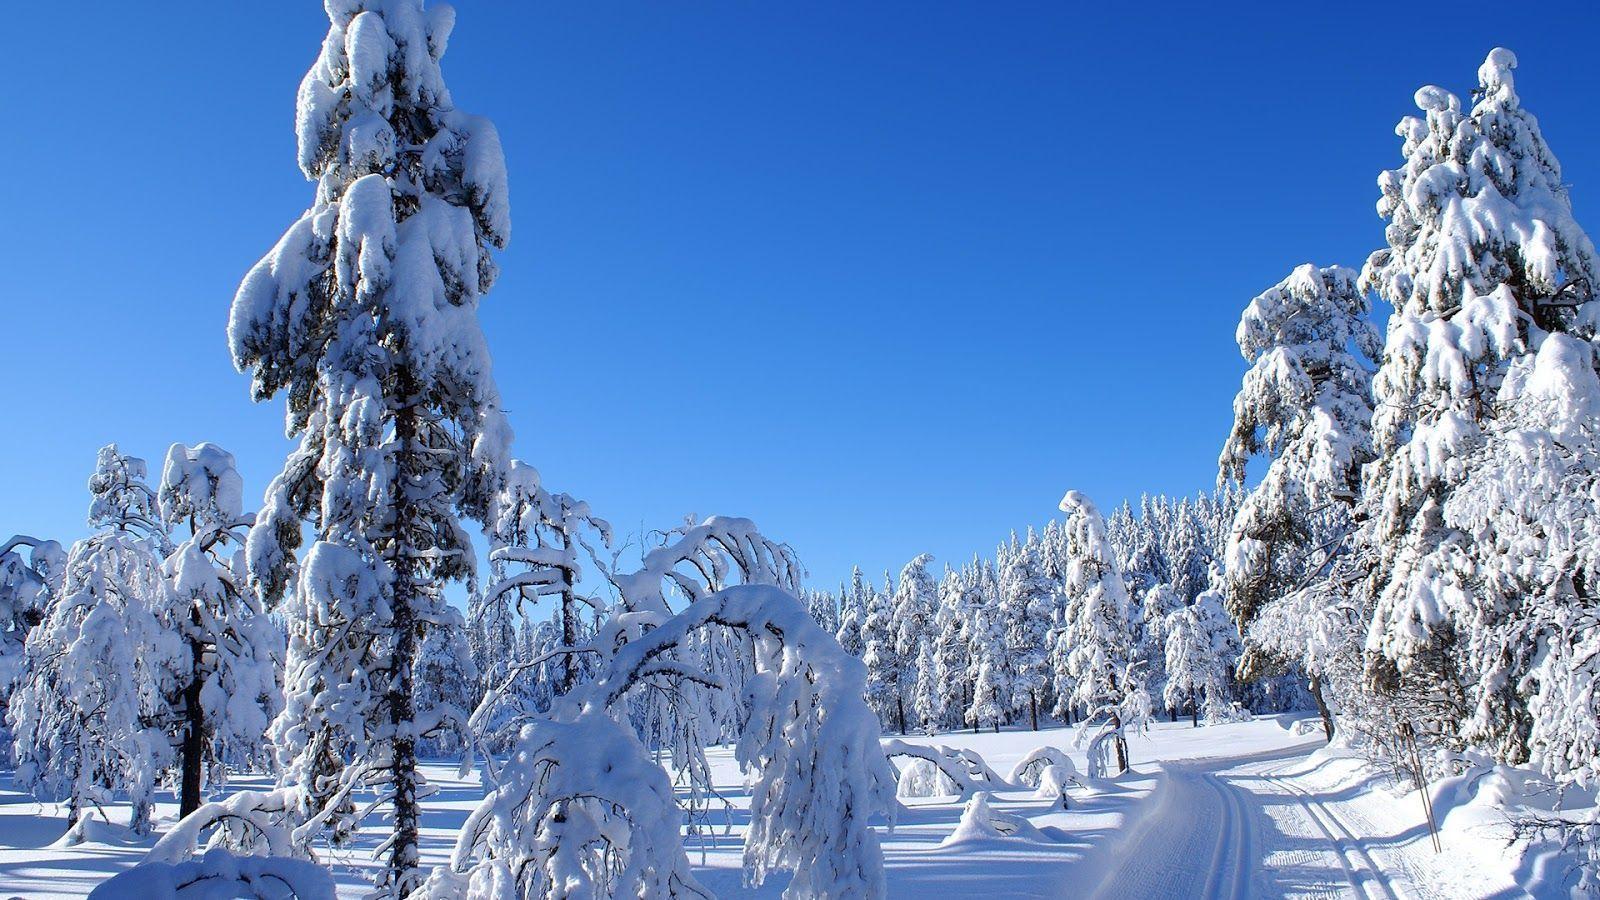 Beautiful Winter Nature Image